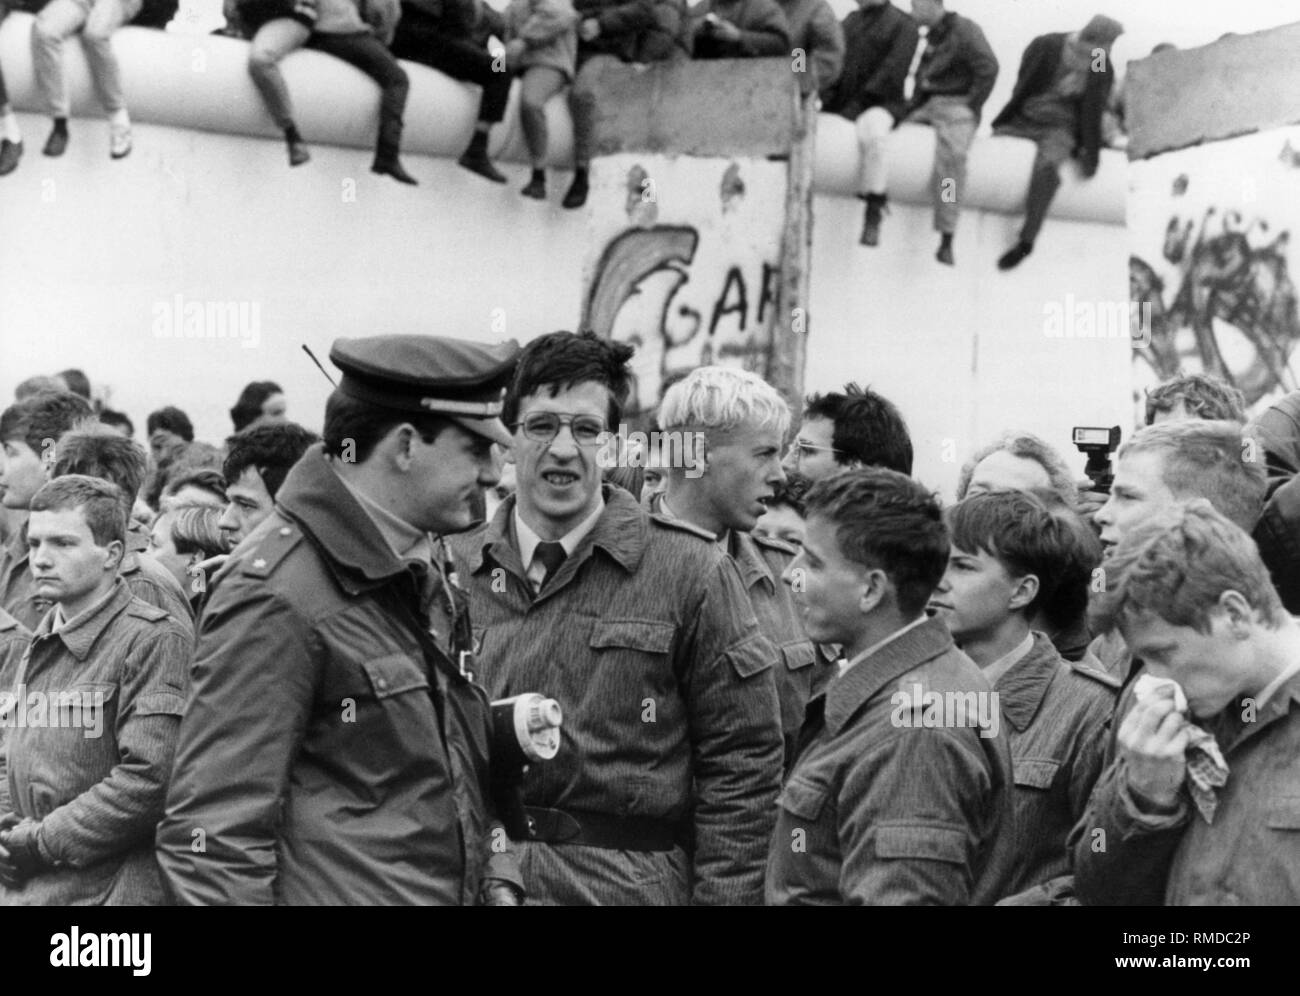 Nach dem Fall der Berliner Mauer, Polizisten von West Berlin und Grenztruppen der DDR zusammen kommen. Im Hintergrund, Berliner sitzen auf der Mauer. Stockfoto